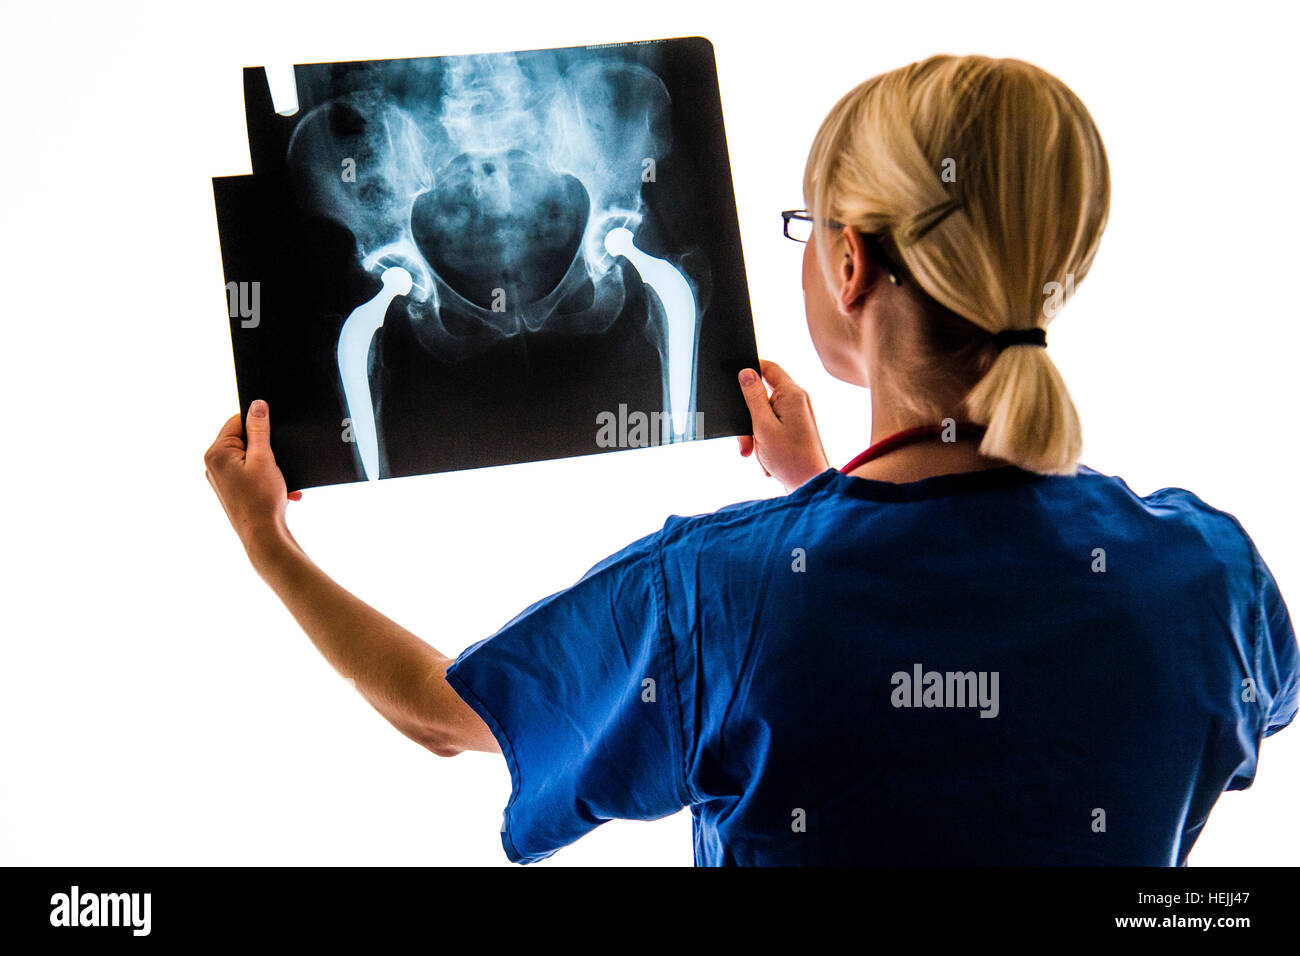 Les professionnels de la Santé du Royaume-Uni : A National Health Service (NHS) Femme recherche femme à un ensemble d'images radiologiques d'une double opération de remplacement de la hanche Banque D'Images